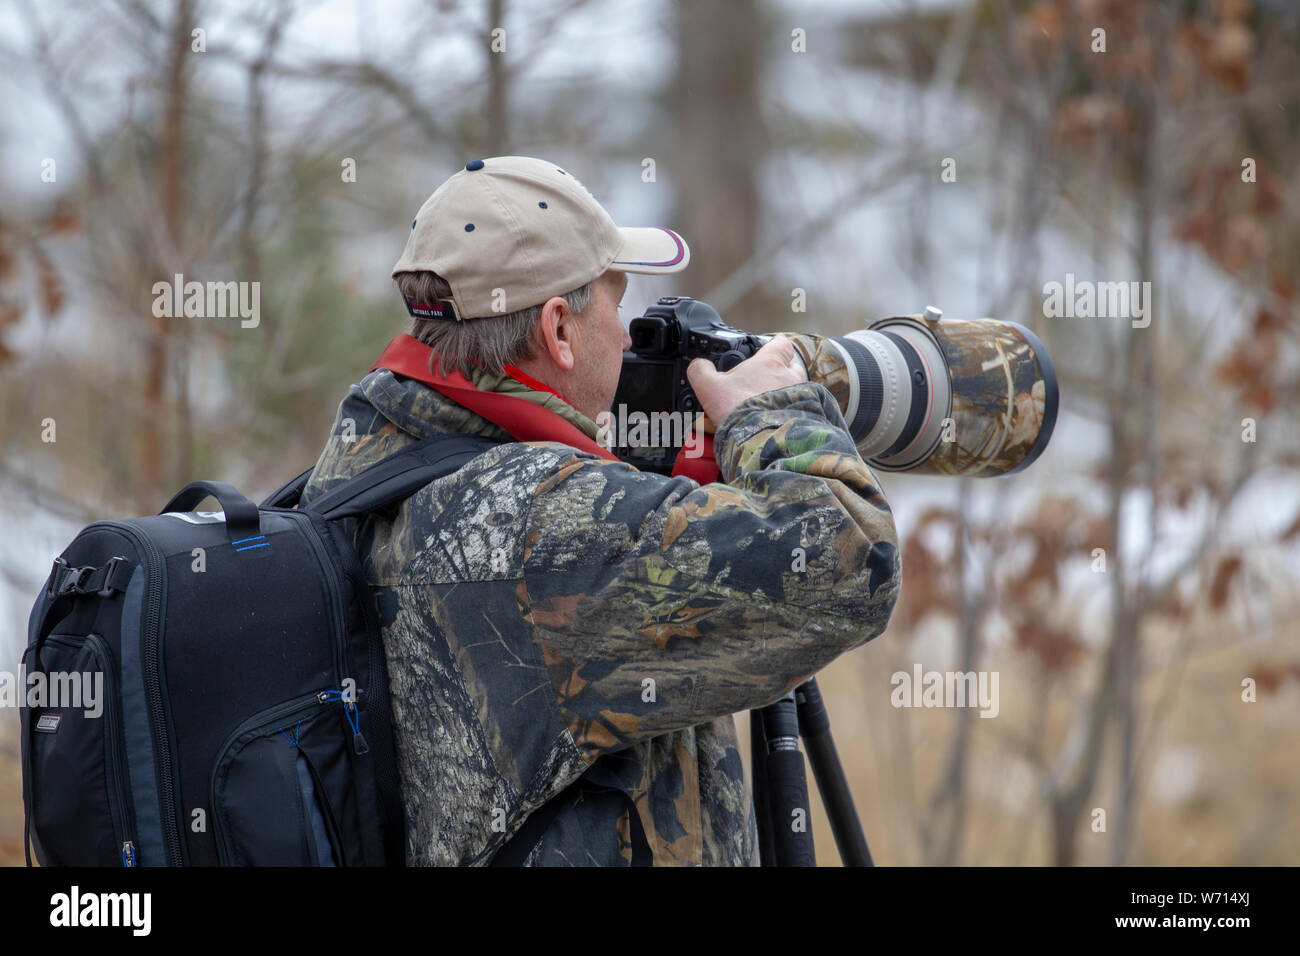 Photographe d'oiseaux avec beaucoup de systèmes optiques de caméra ressemble aux oiseaux Banque D'Images